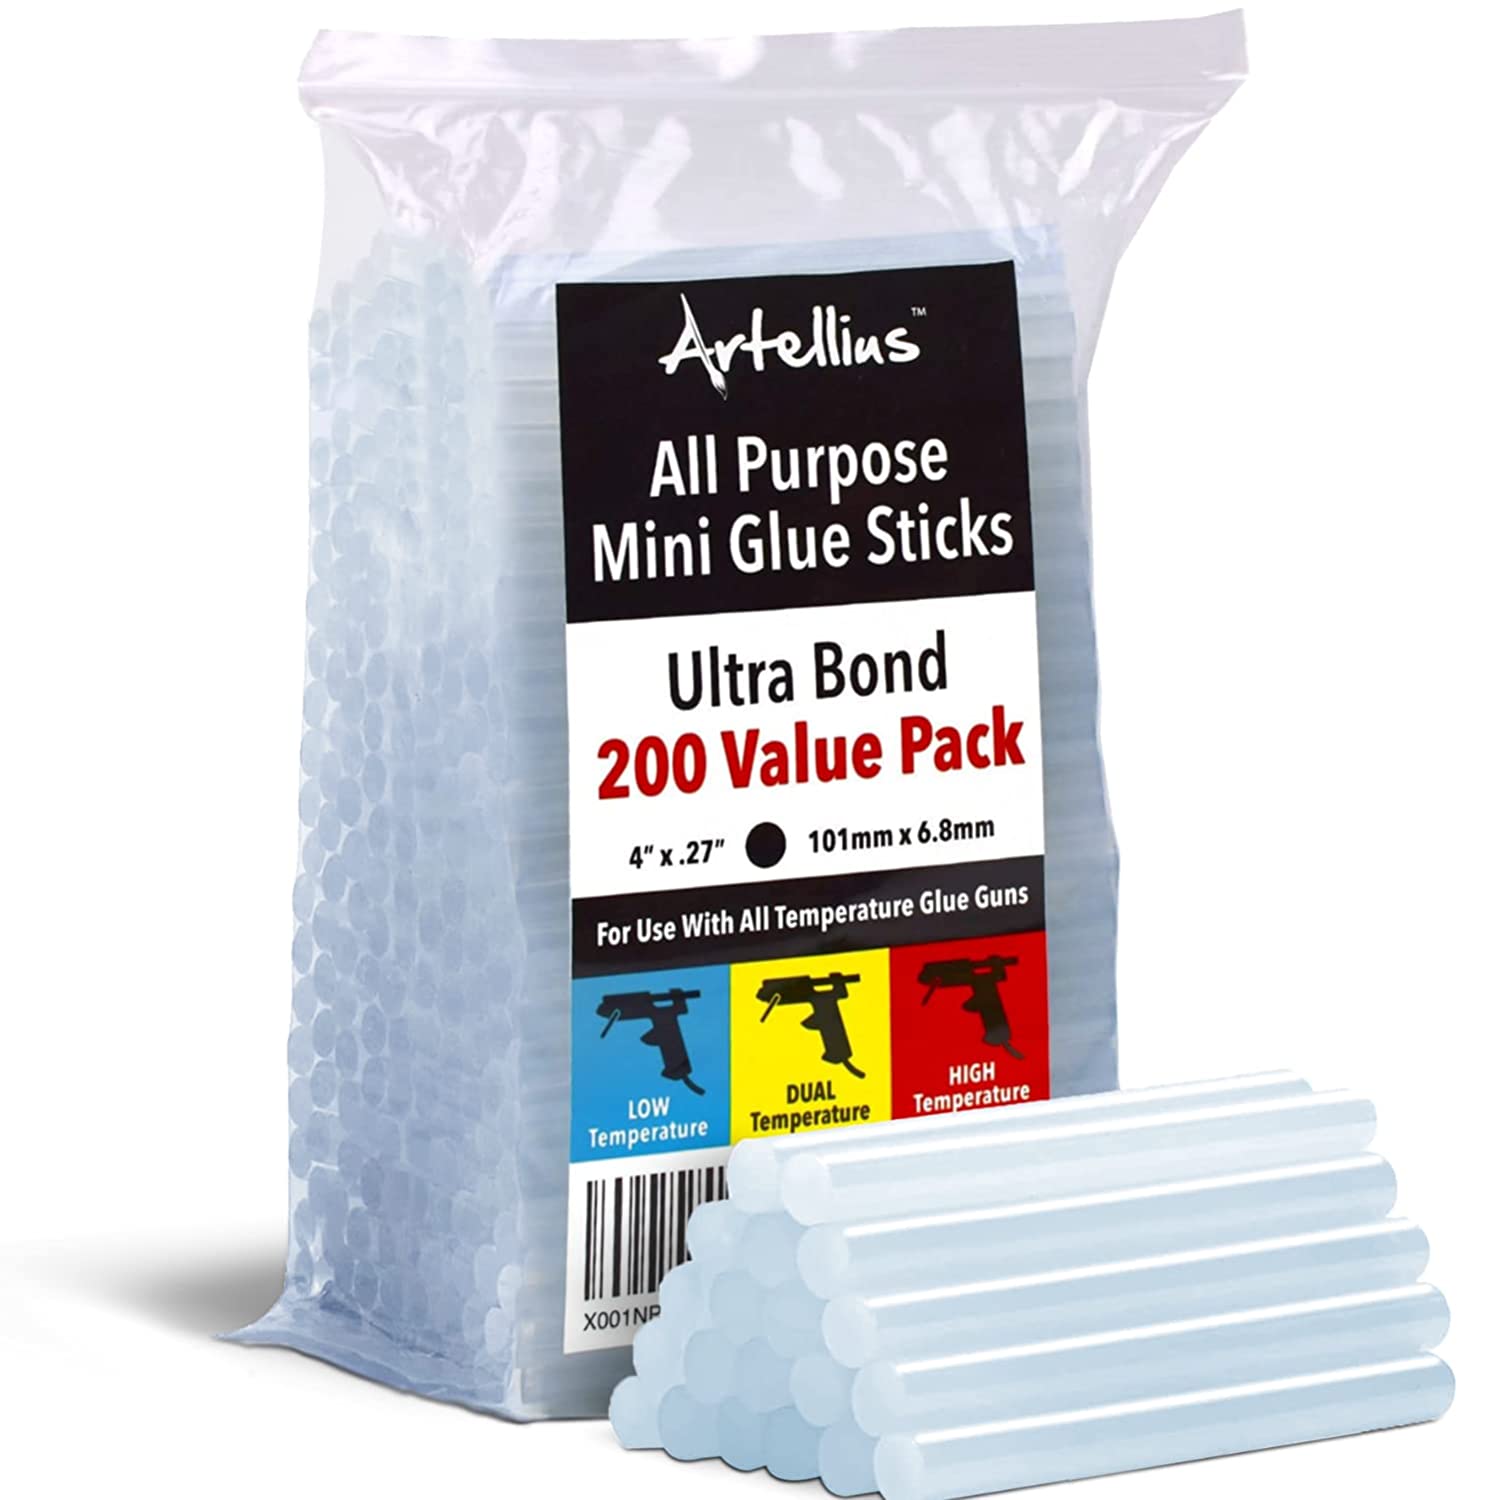 Artellius All Purpose Mini Hot Glue Gun Sticks, 200-Count